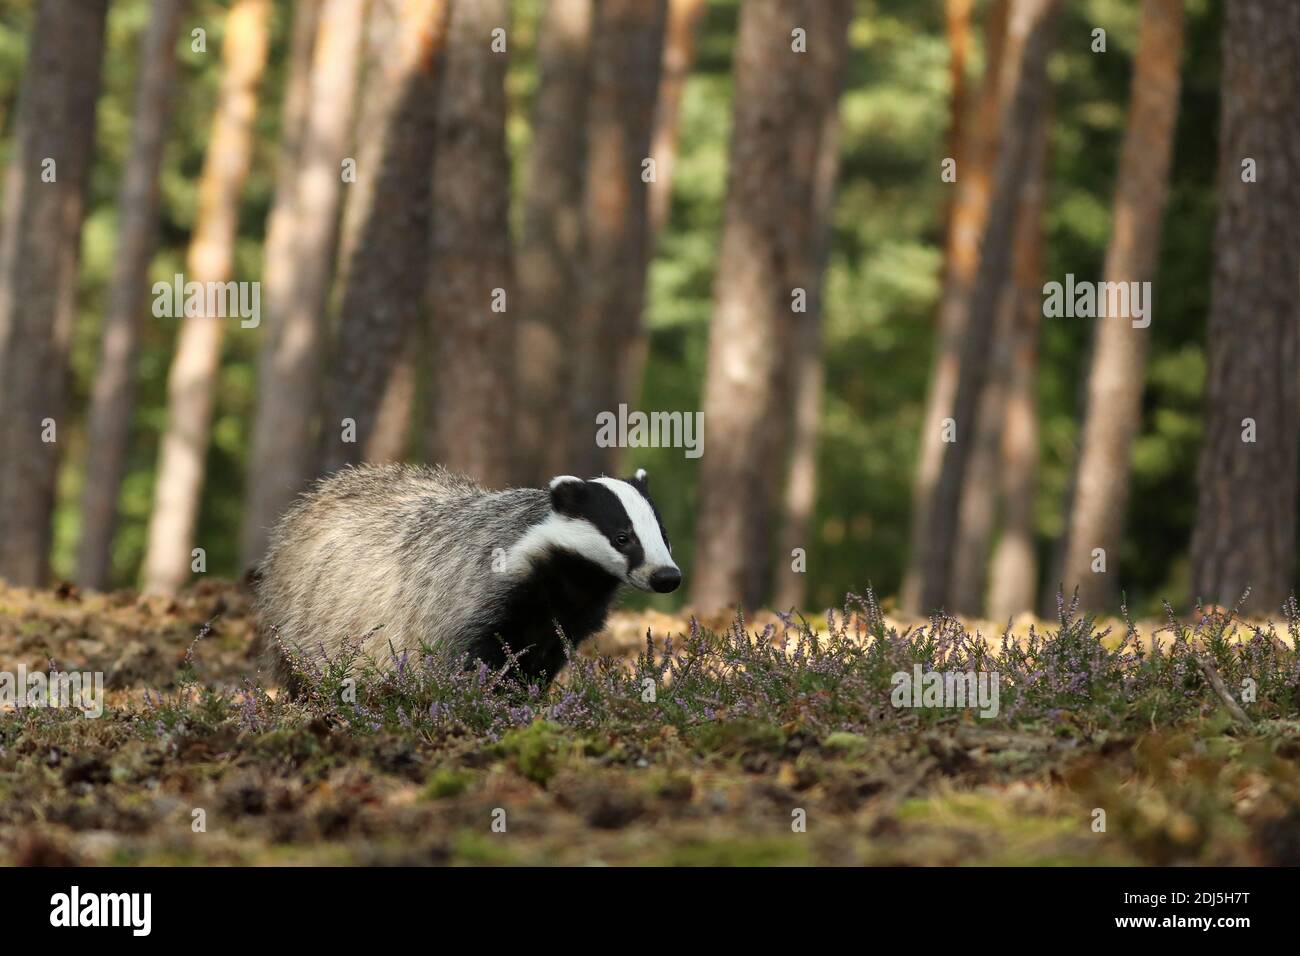 Wildlife scene. Wild Badger, Meles meles, animal in pine forest. Europe. Stock Photo